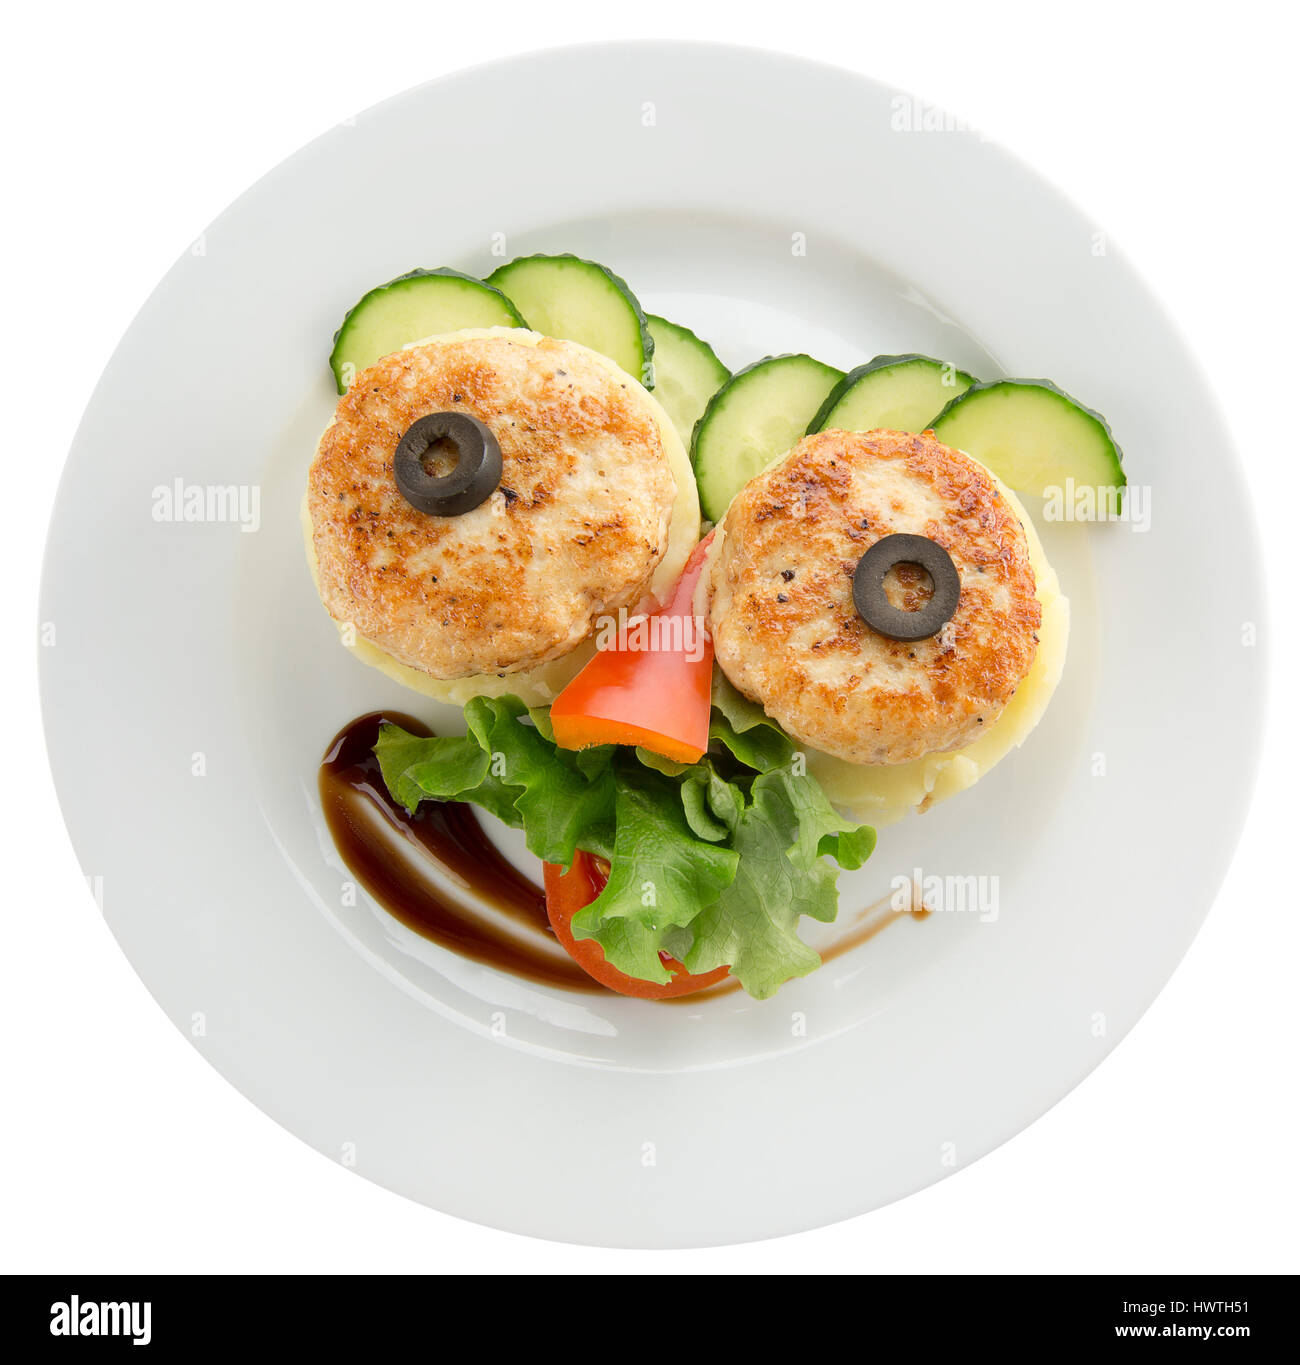 Schnitzel mit Gemüse in der Platte. Stockfoto